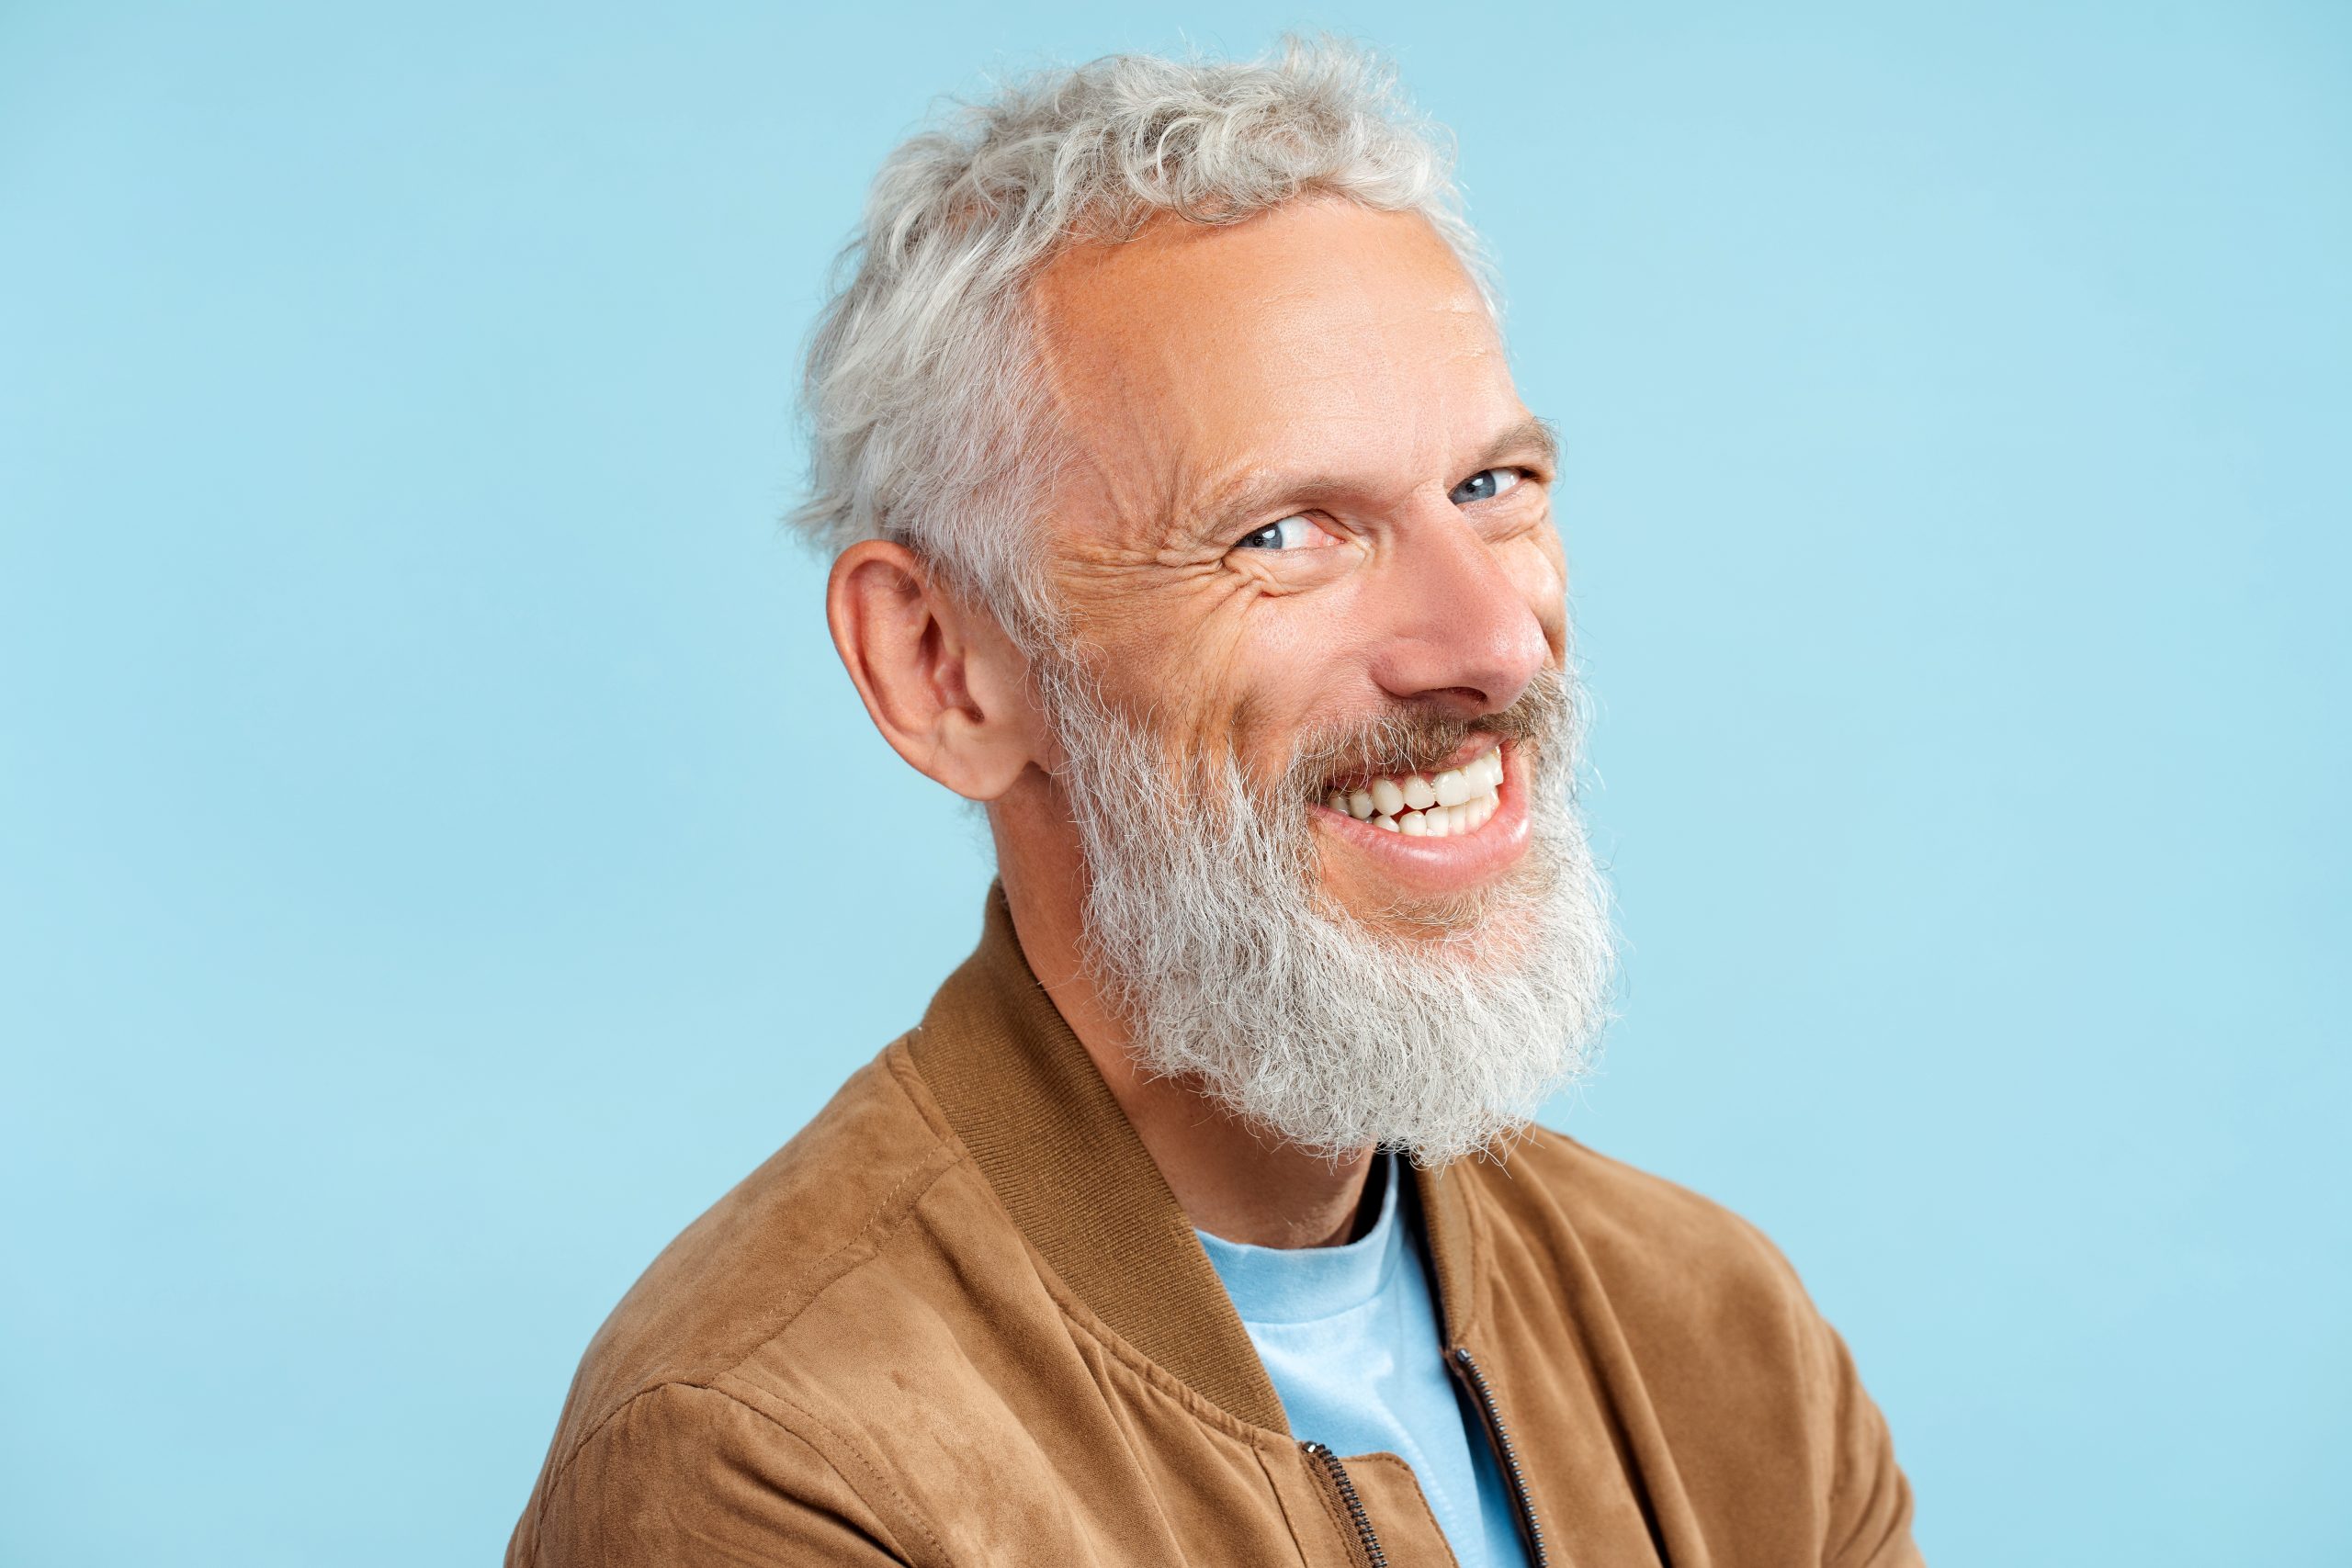 Mann mit Zahnimplantaten lacht